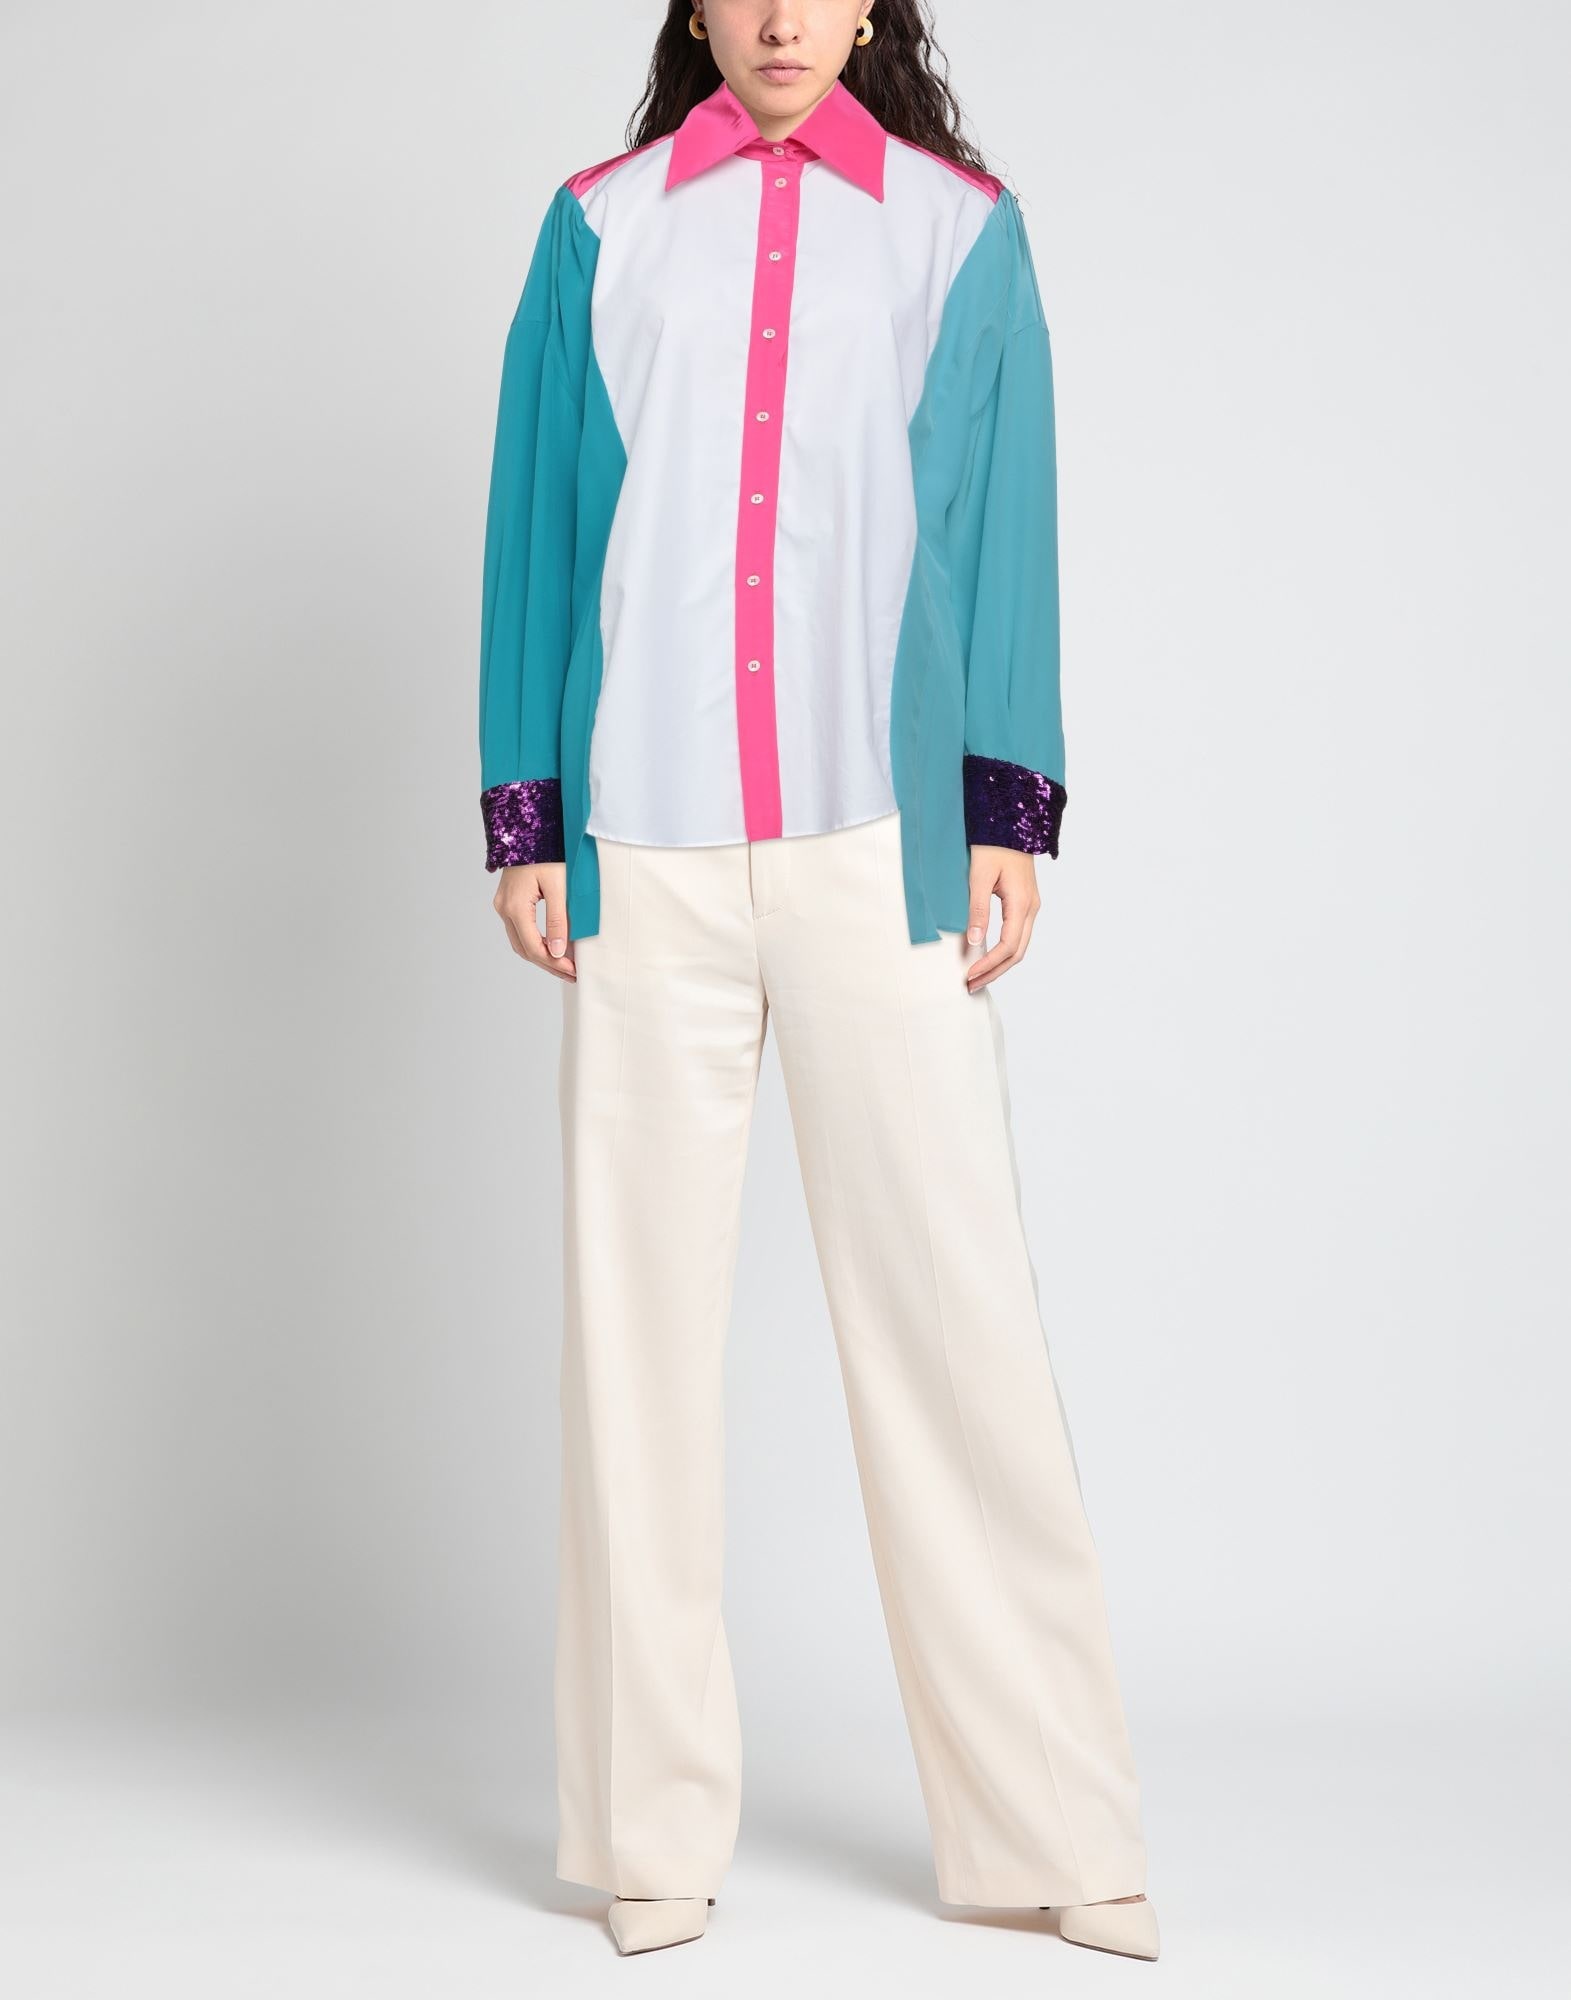 Fuchsia Women's Patterned Shirts & Blouses - 2